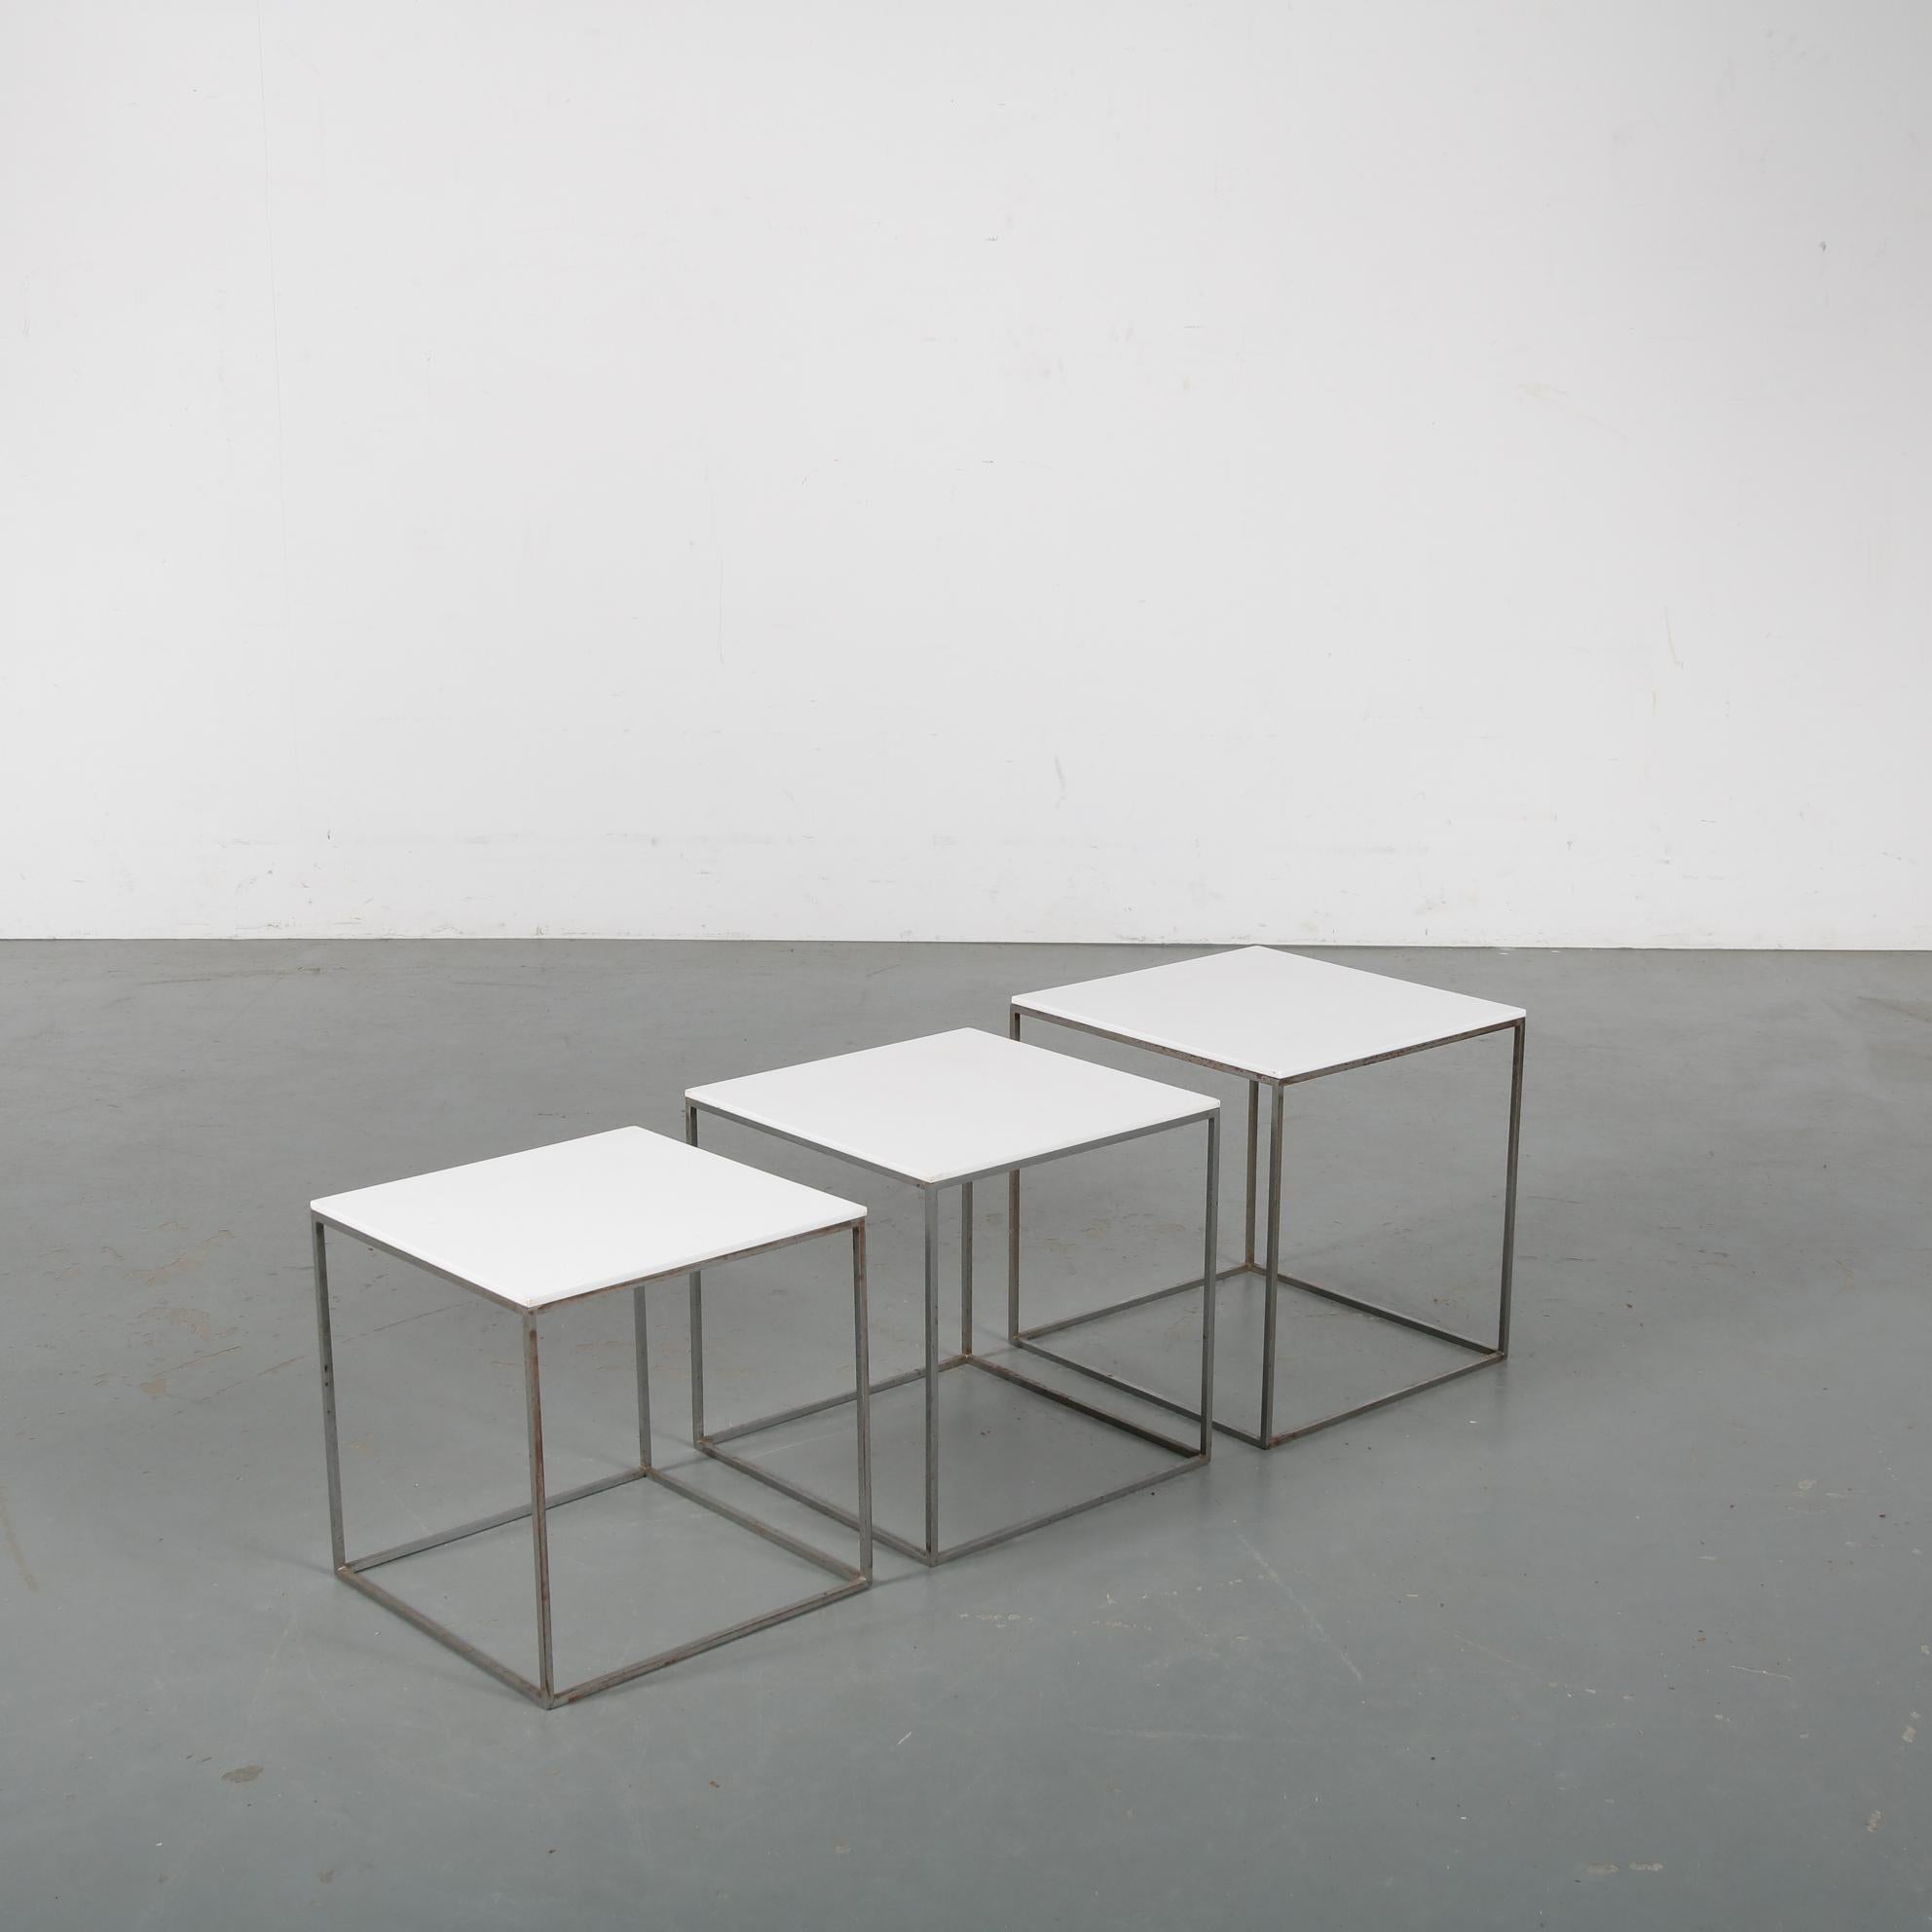 Ein Satz von drei Schachteltischen, Modell PK71, entworfen von Poul Kjaerholm und hergestellt von E. Kold Christensen in Dänemark um 1960.

Jeder Tisch hat eine auffällige quadratische Struktur aus hochwertigem grauem Metall. Der Rahmen weist